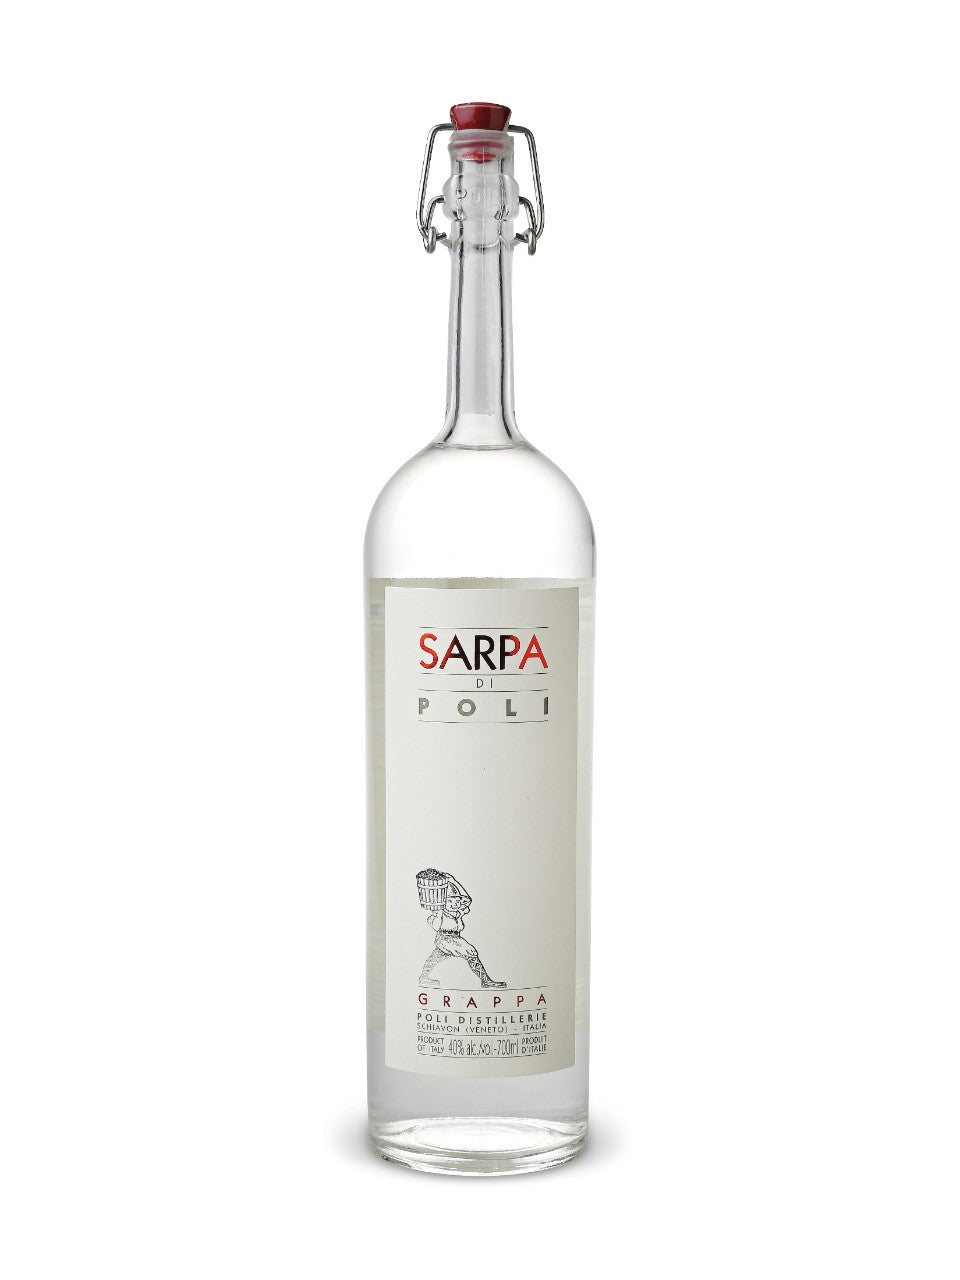 Grappa Sarpa Di Poli 700 mL bottle